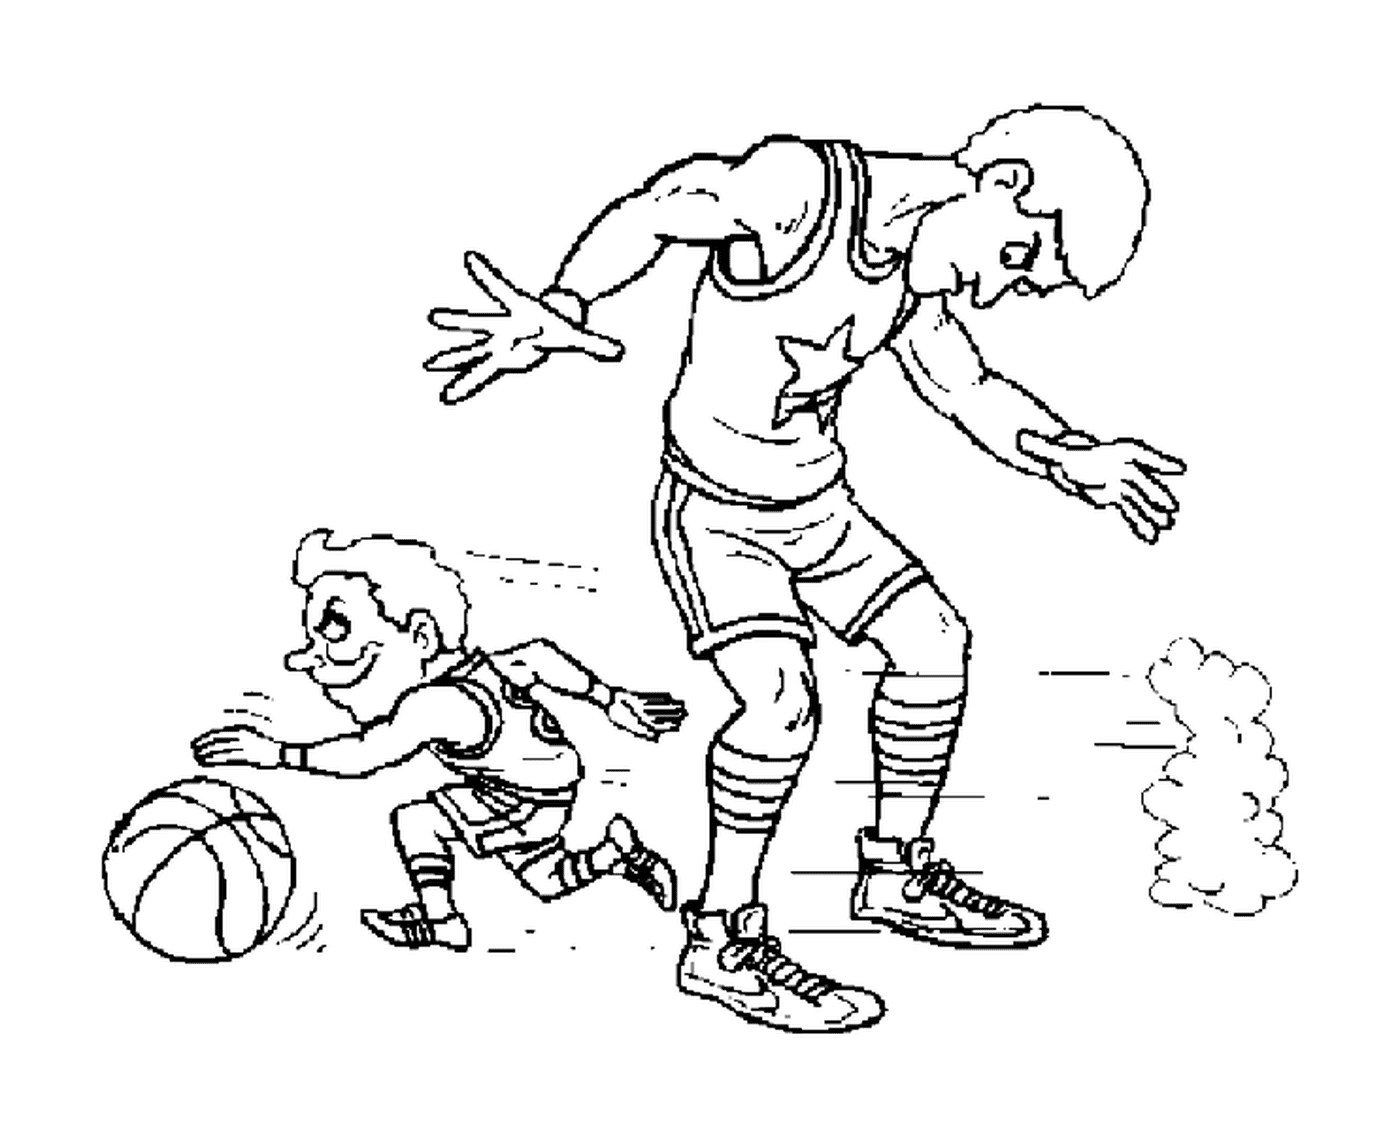  Маленький игрок проходит под ногами другого игрока 